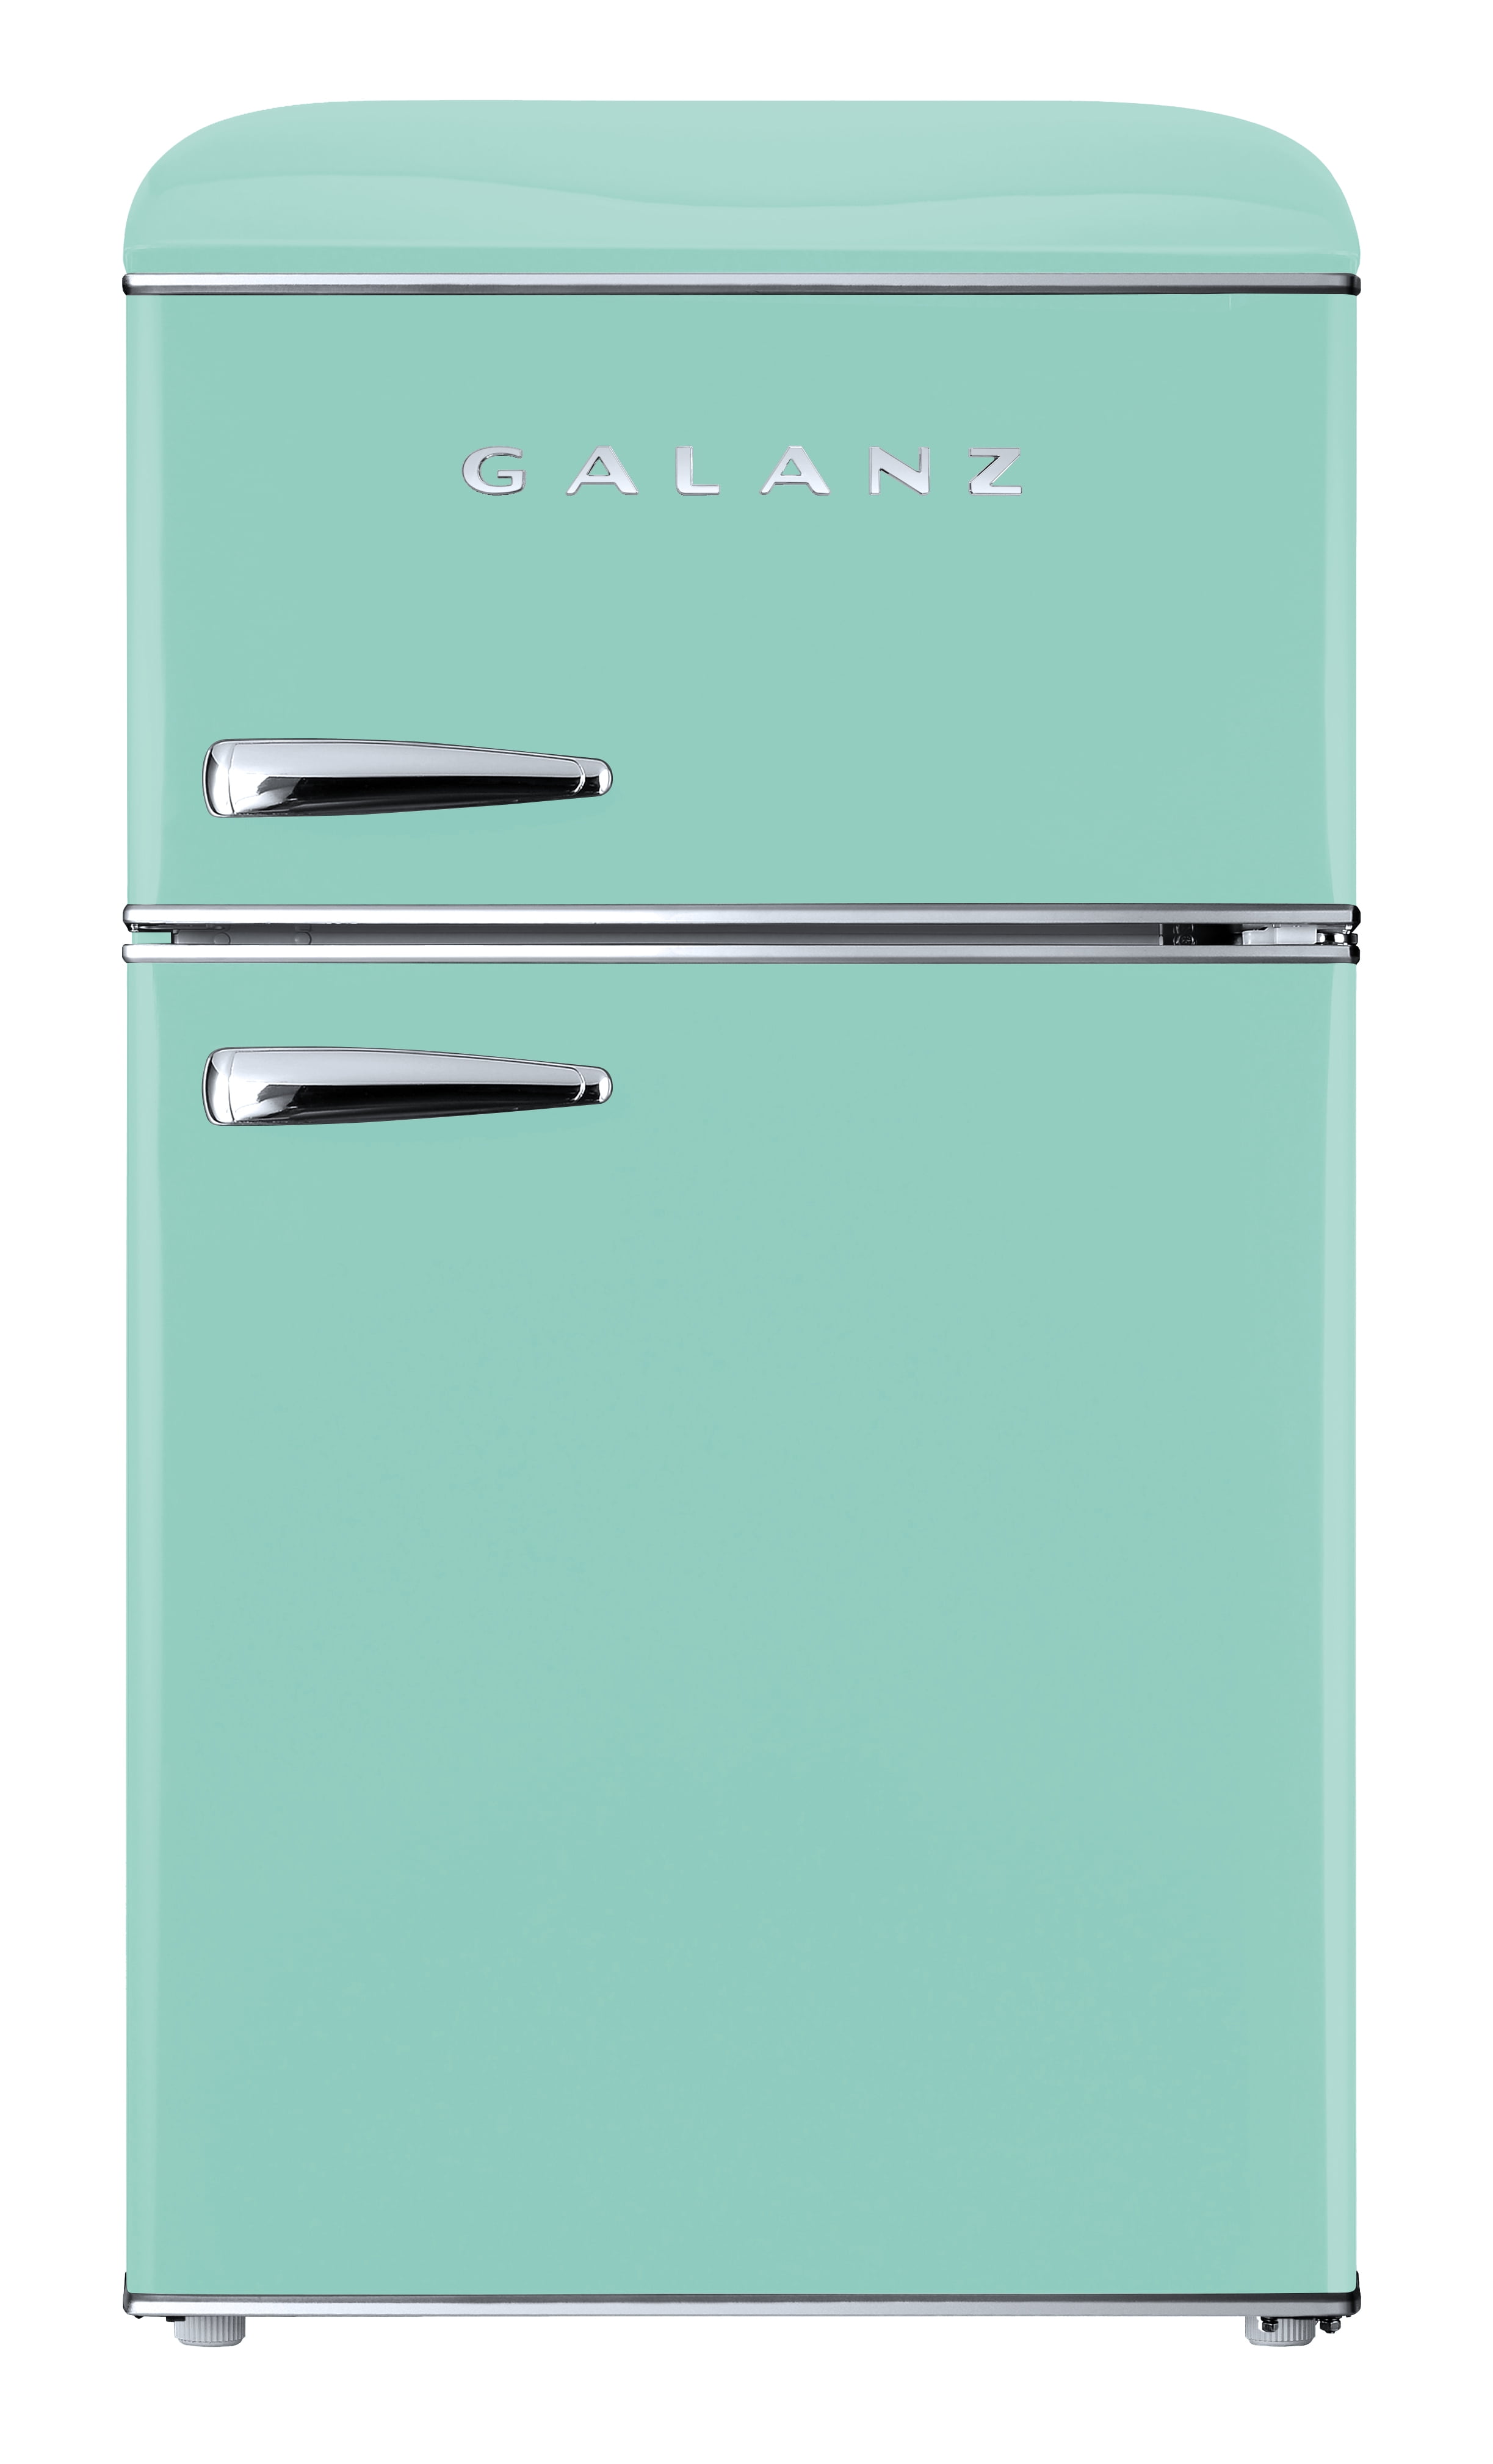 Galanz Glr Tgner Cu Ft Retro Compact Refrigerator True Top